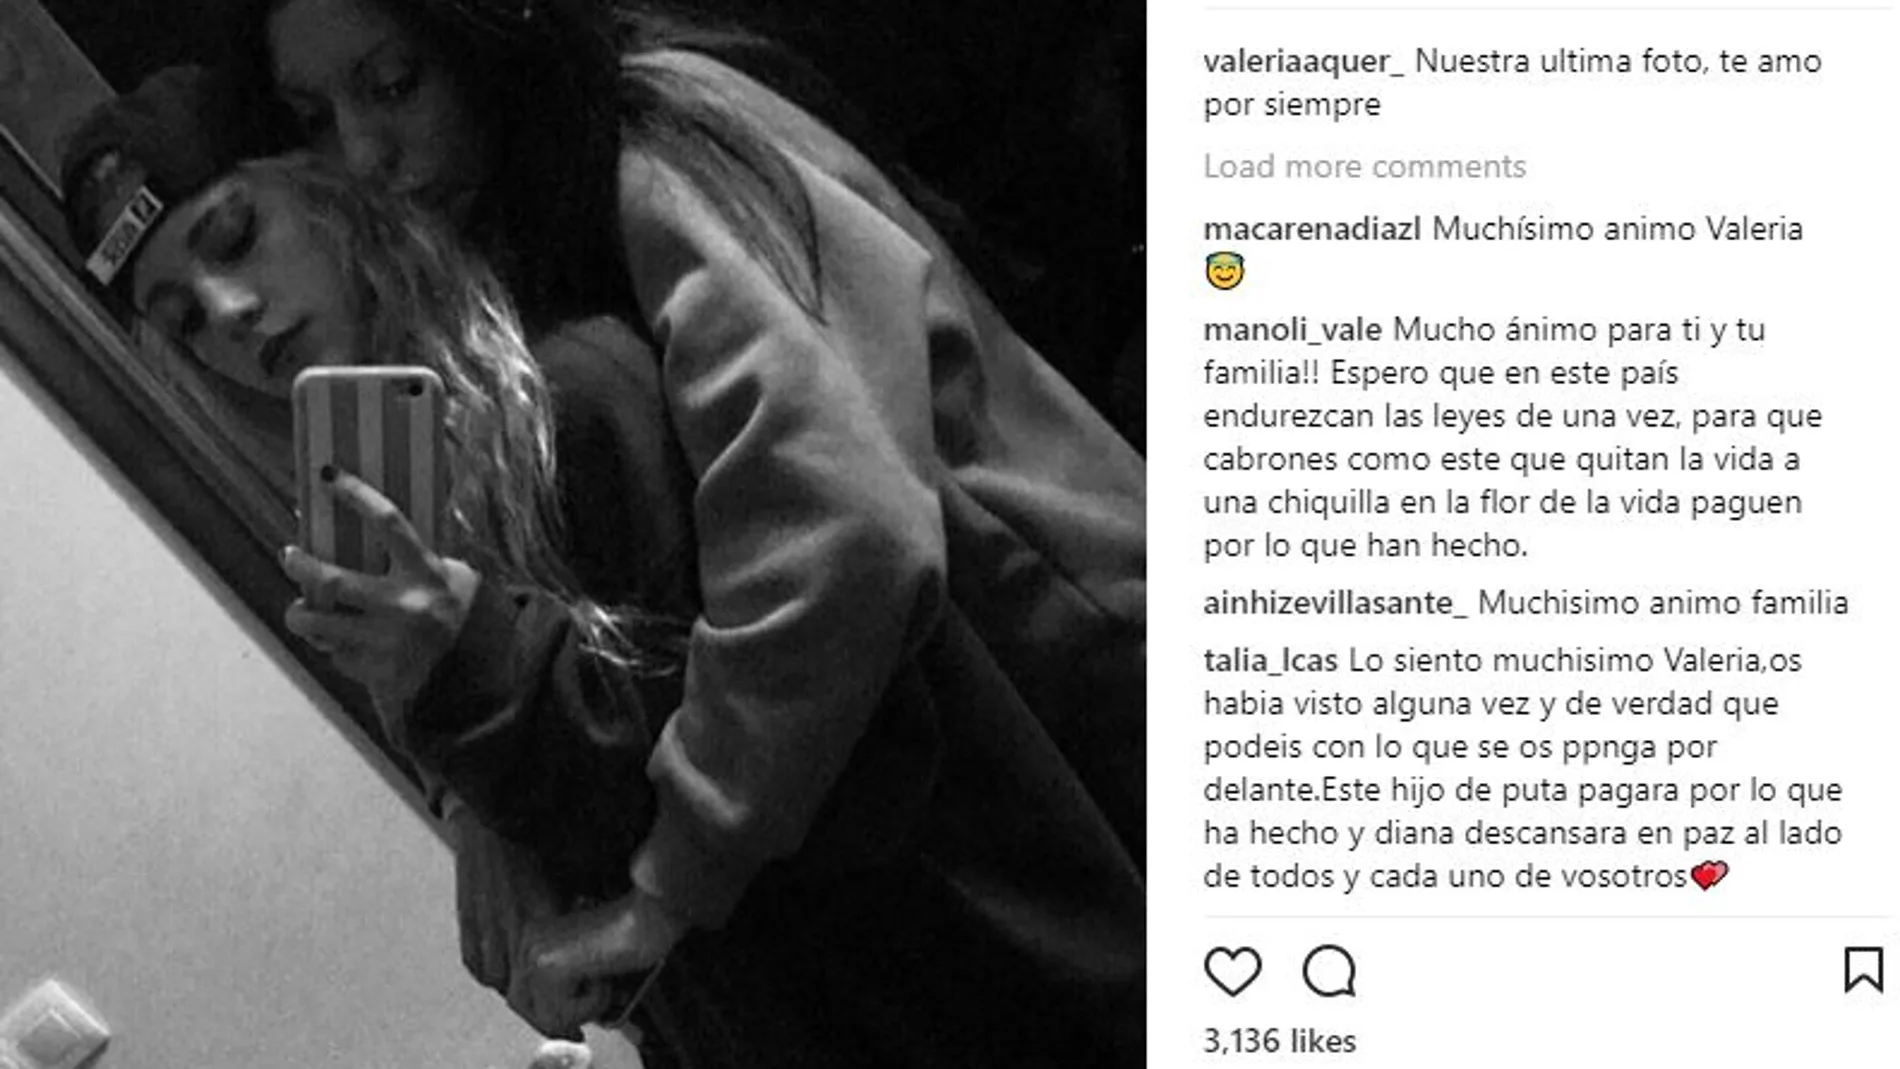 La emotiva despedida de Valeria Quer: «Nuestra última foto, te amo por siempre»